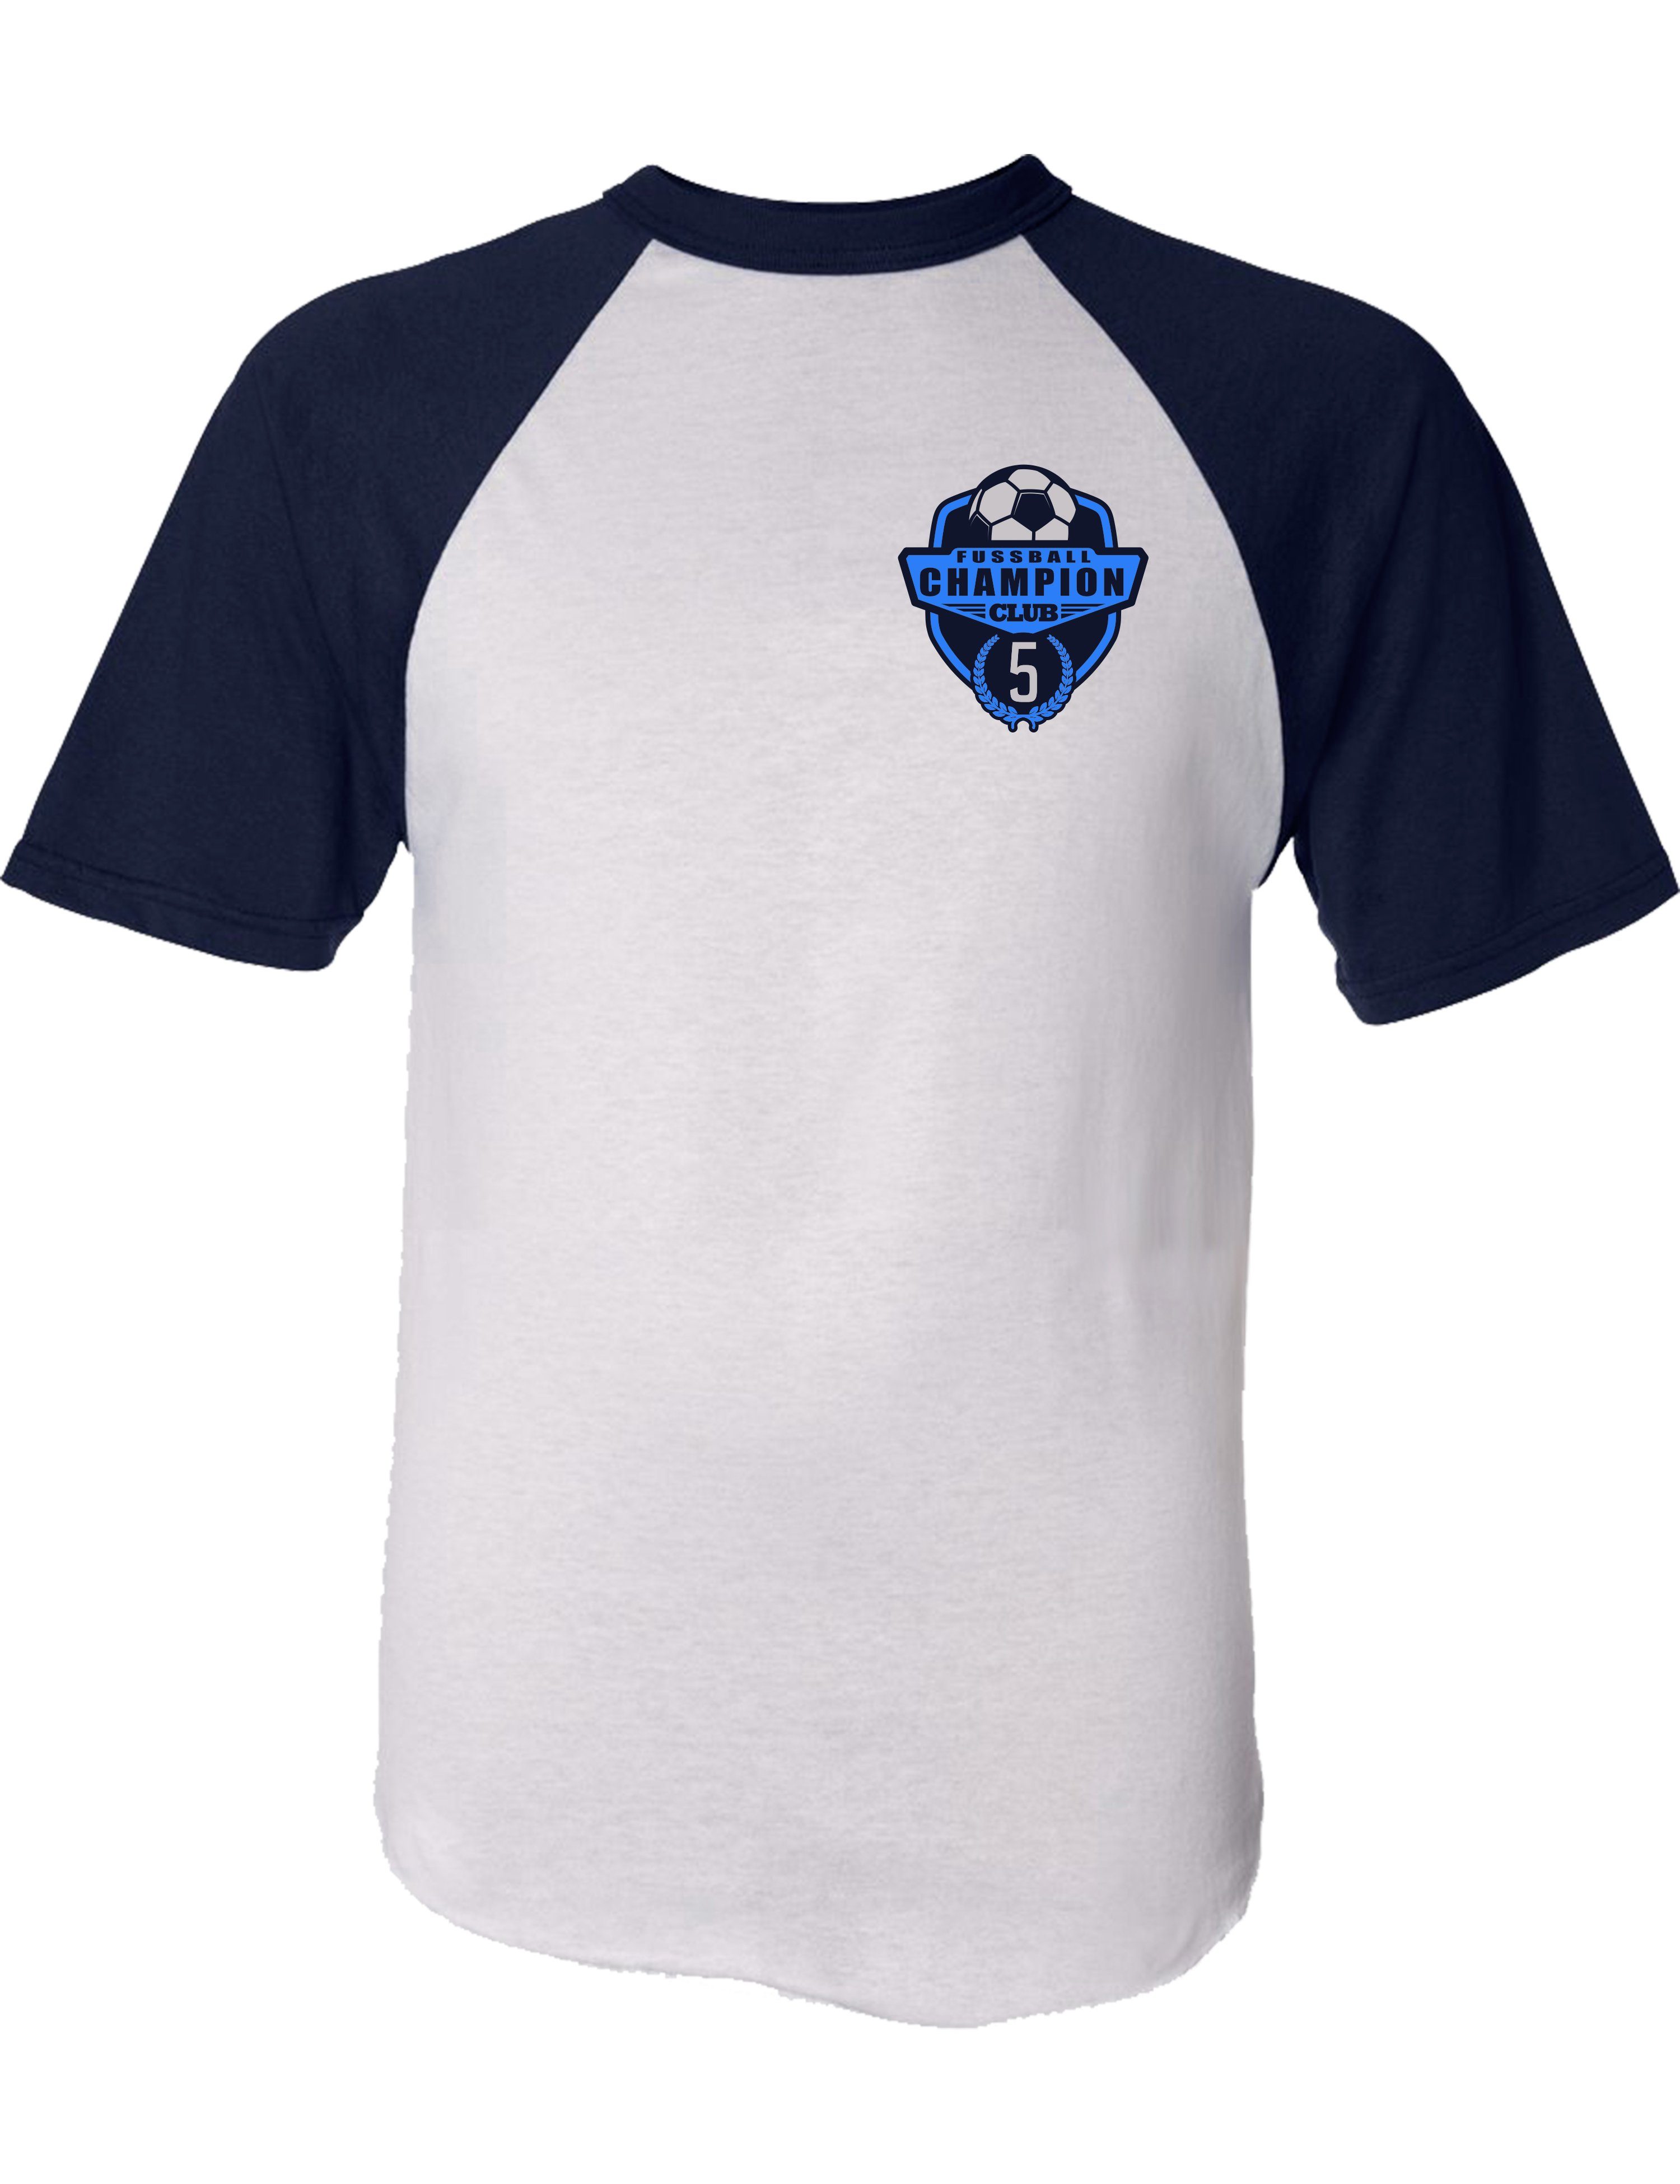 Champion hochwertiger Baumwolle Print-Shirt Siebdruck, Baddery Fussball Trikot 5 5. Jungen aus zum Geburtstag - Jahre,